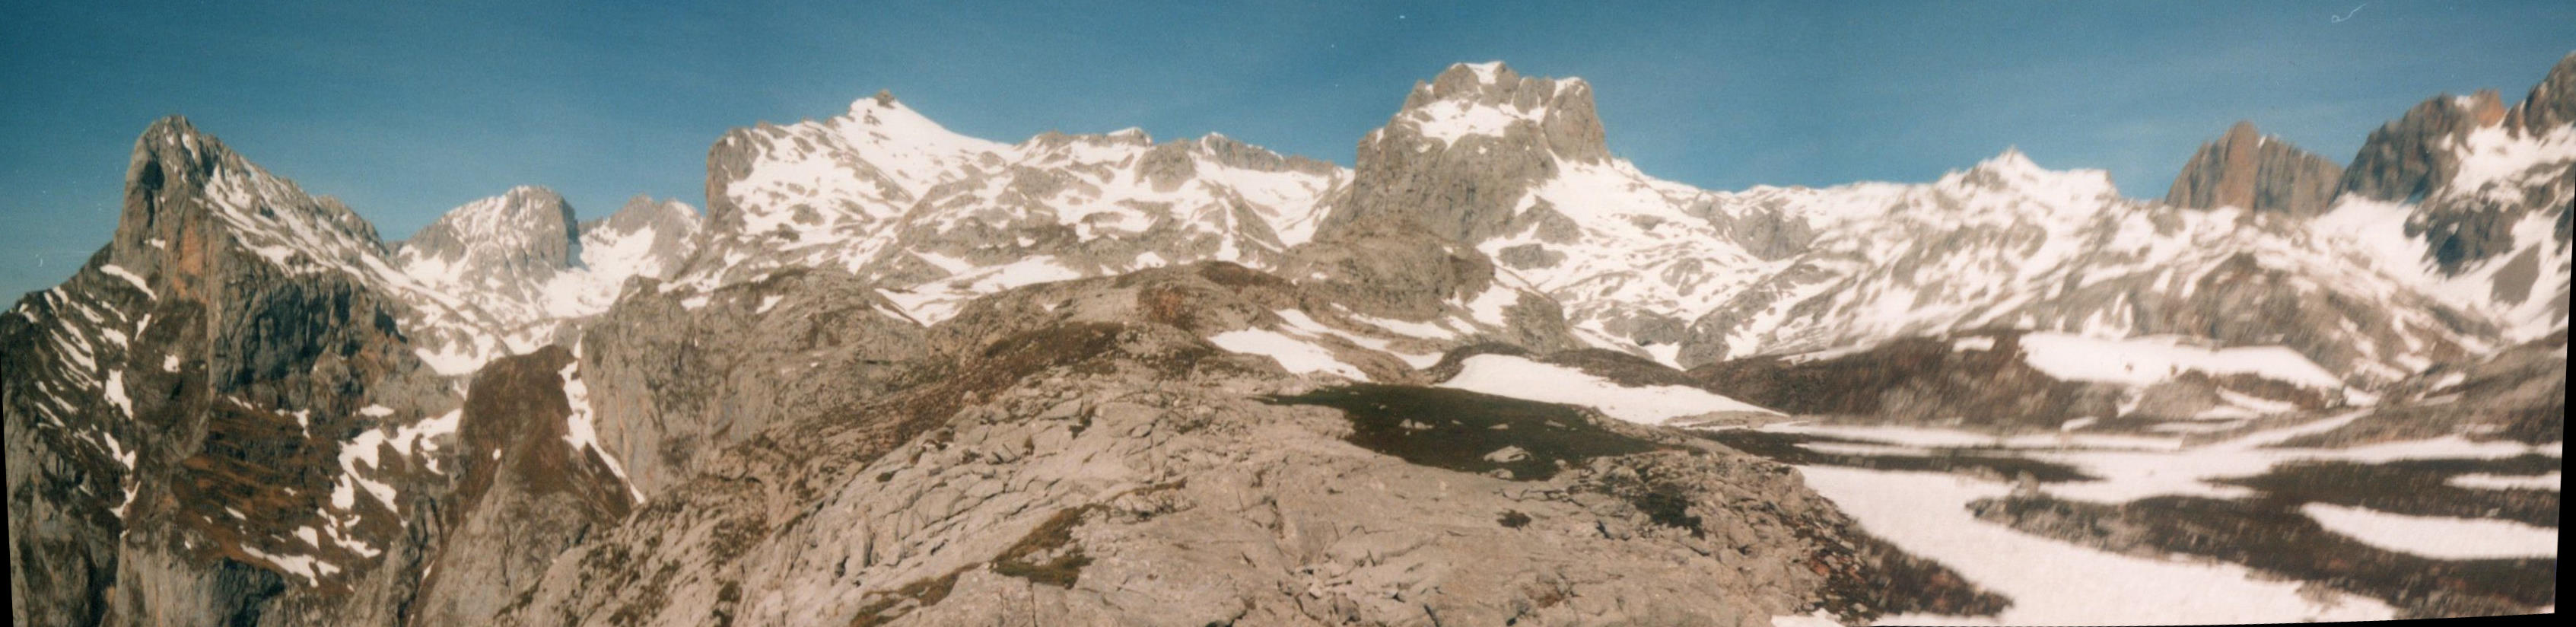 Panorama from T del Hoyo de Llordes, Picos de Europa